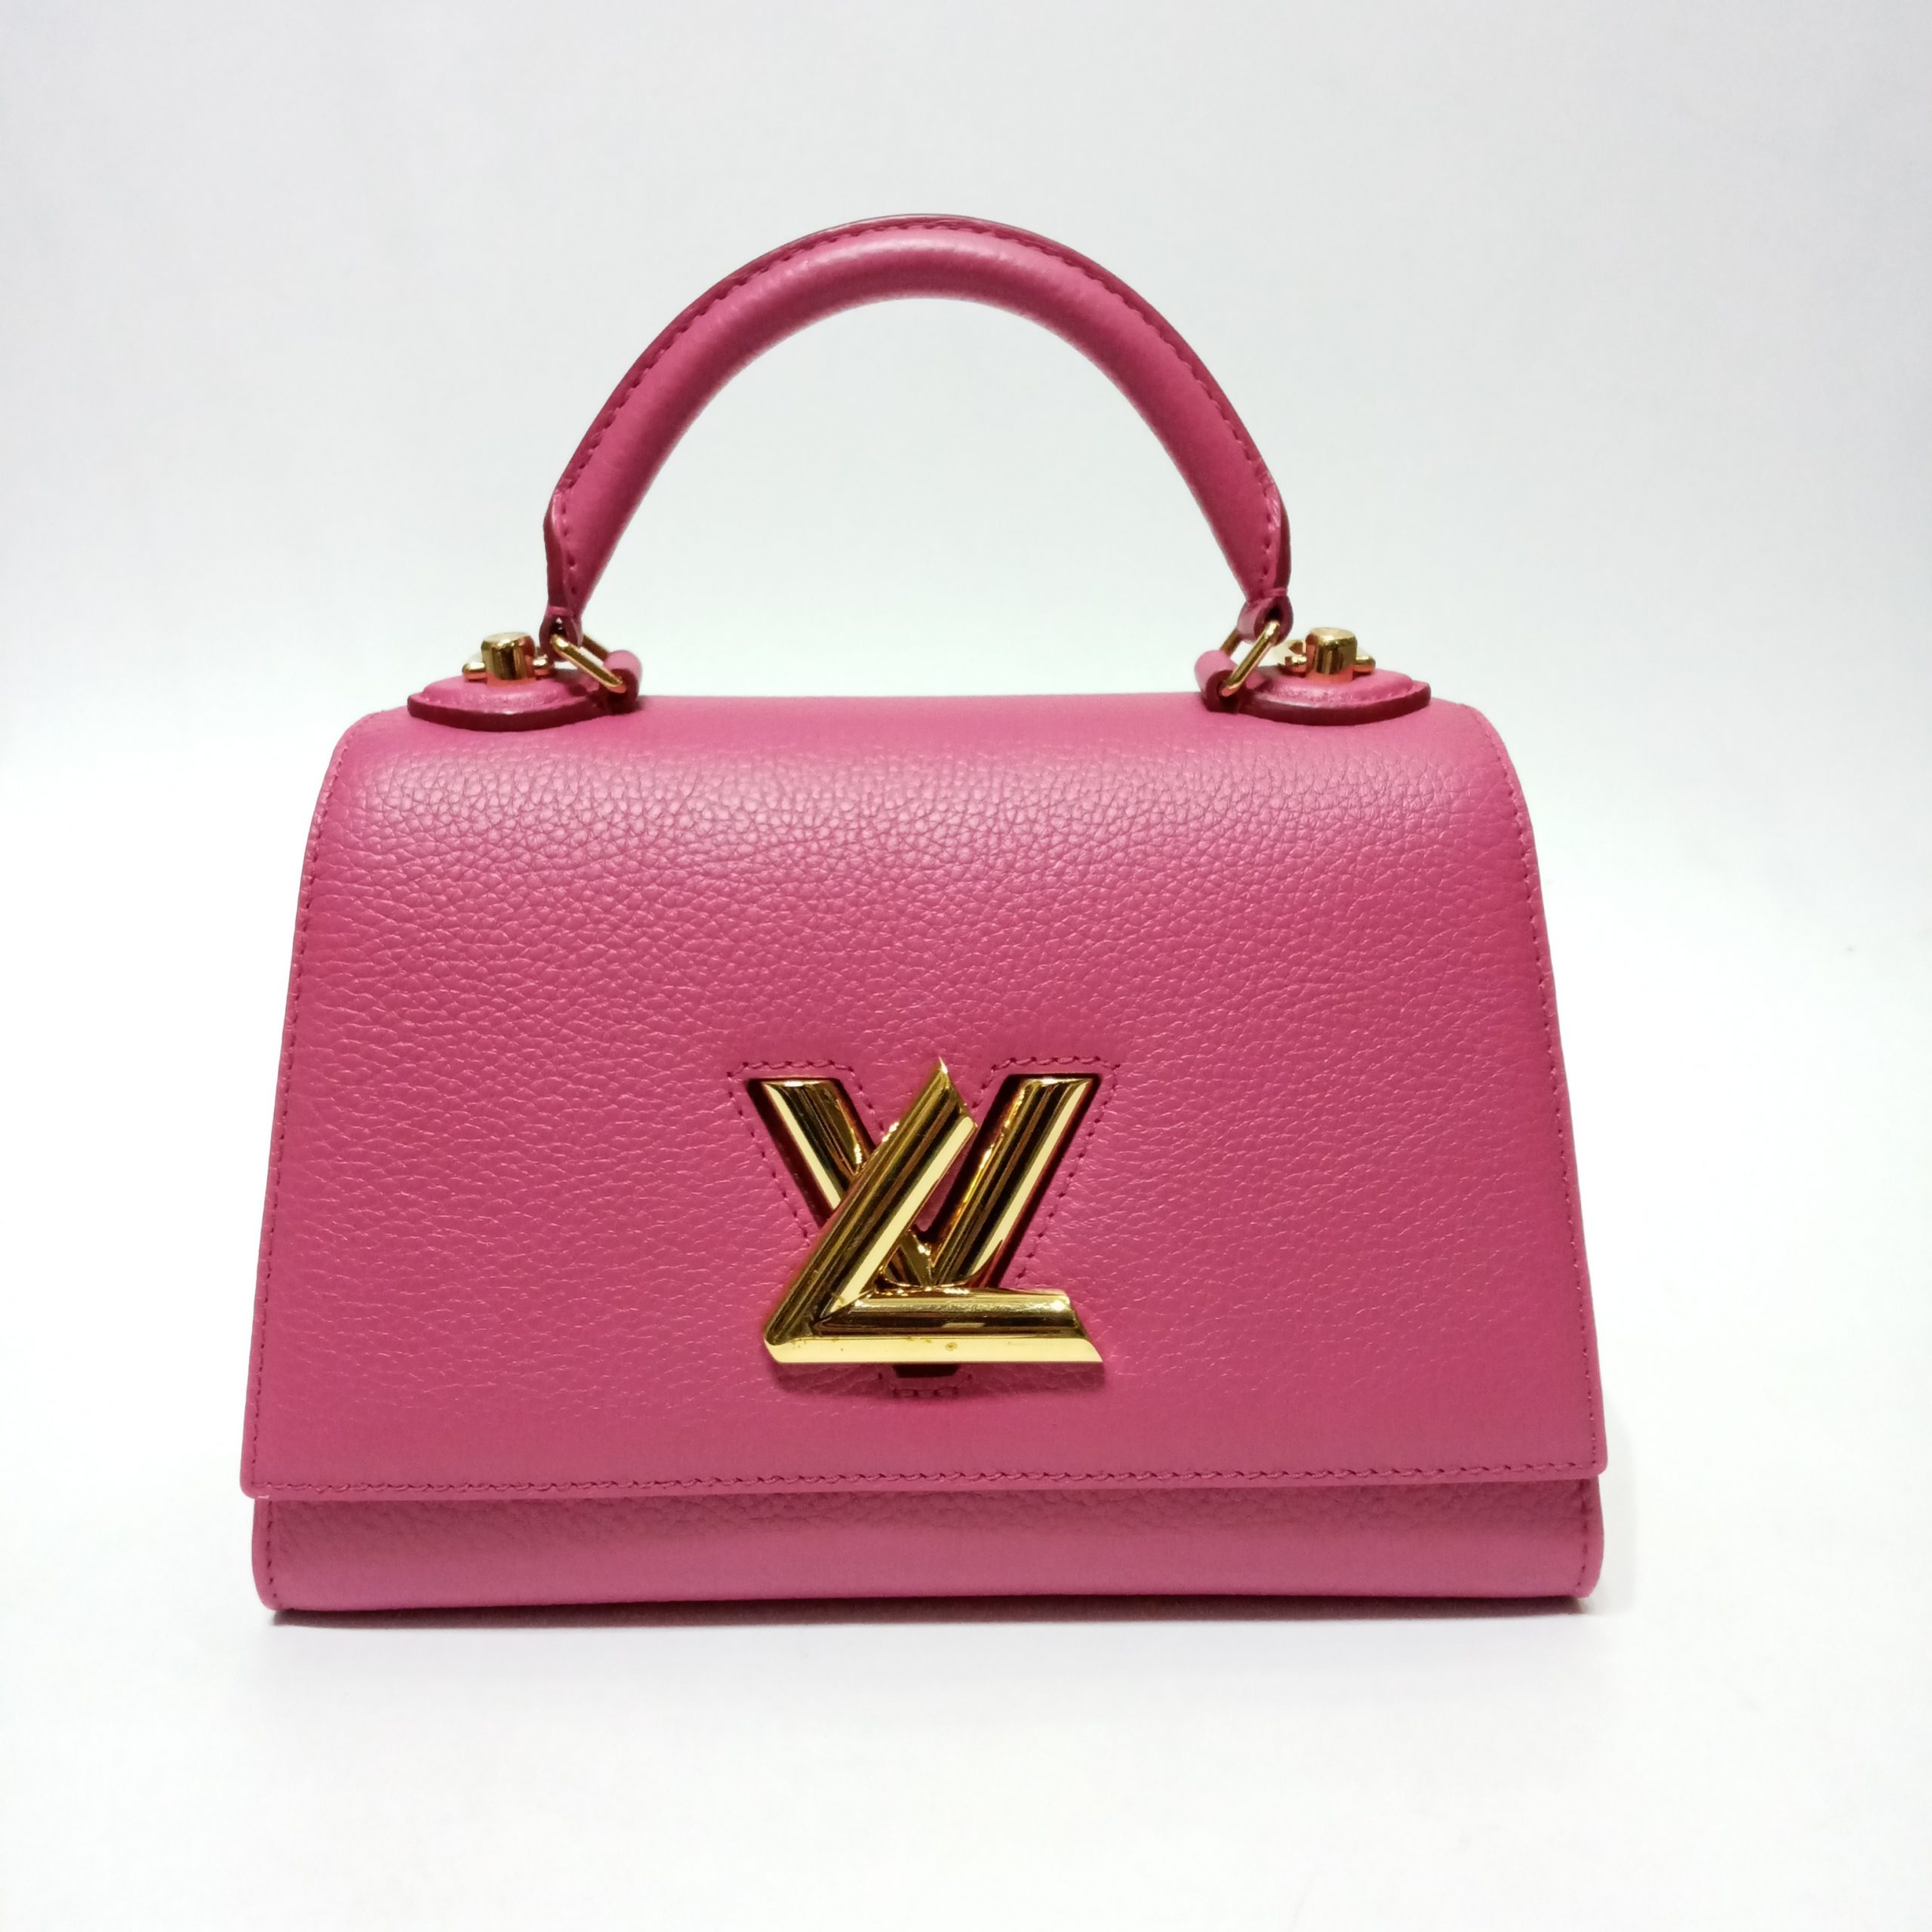 Louisvuitton Twist PM, Pink, One Size